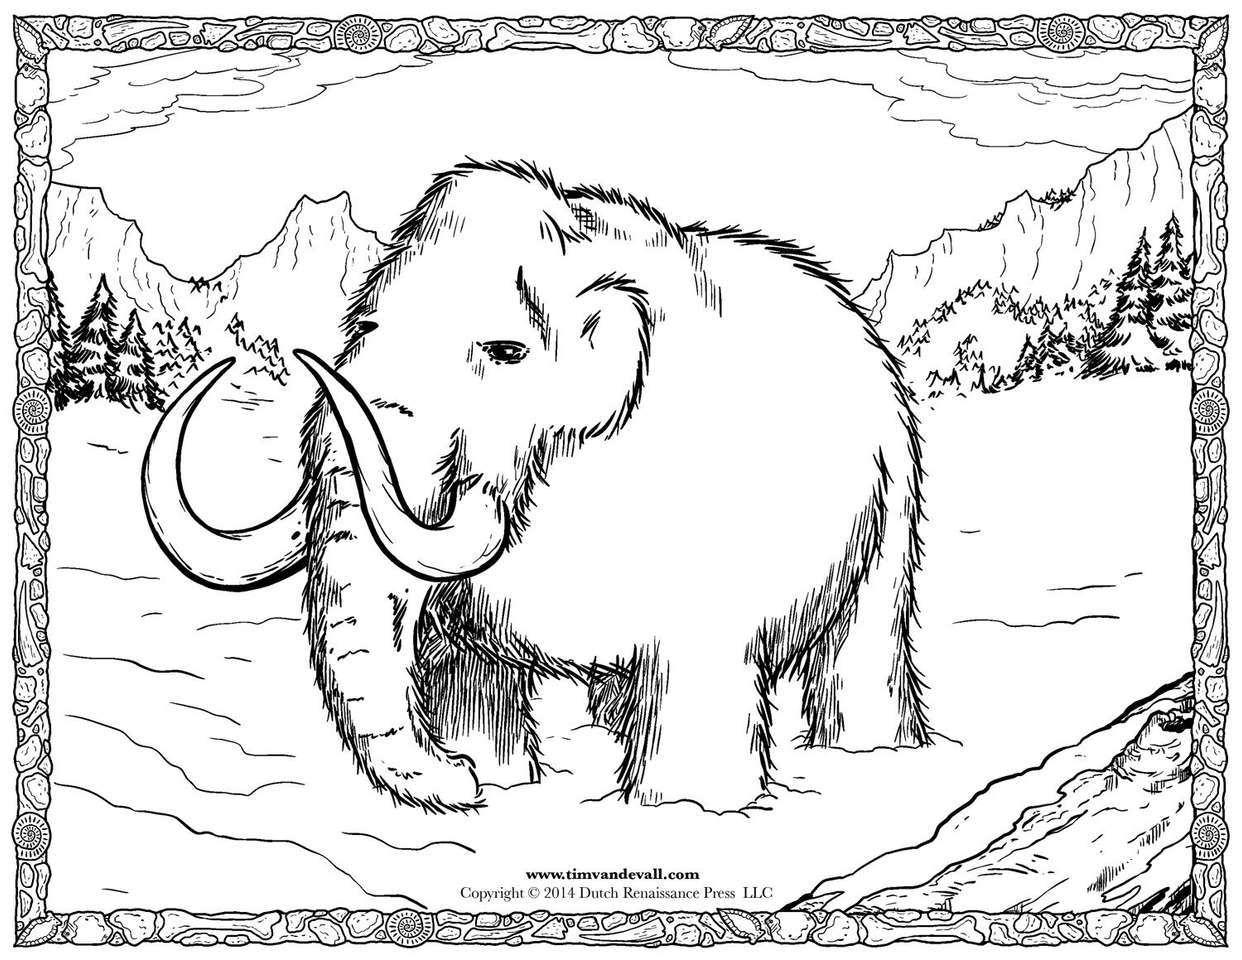 Mammut-Rätsel Online-Puzzle